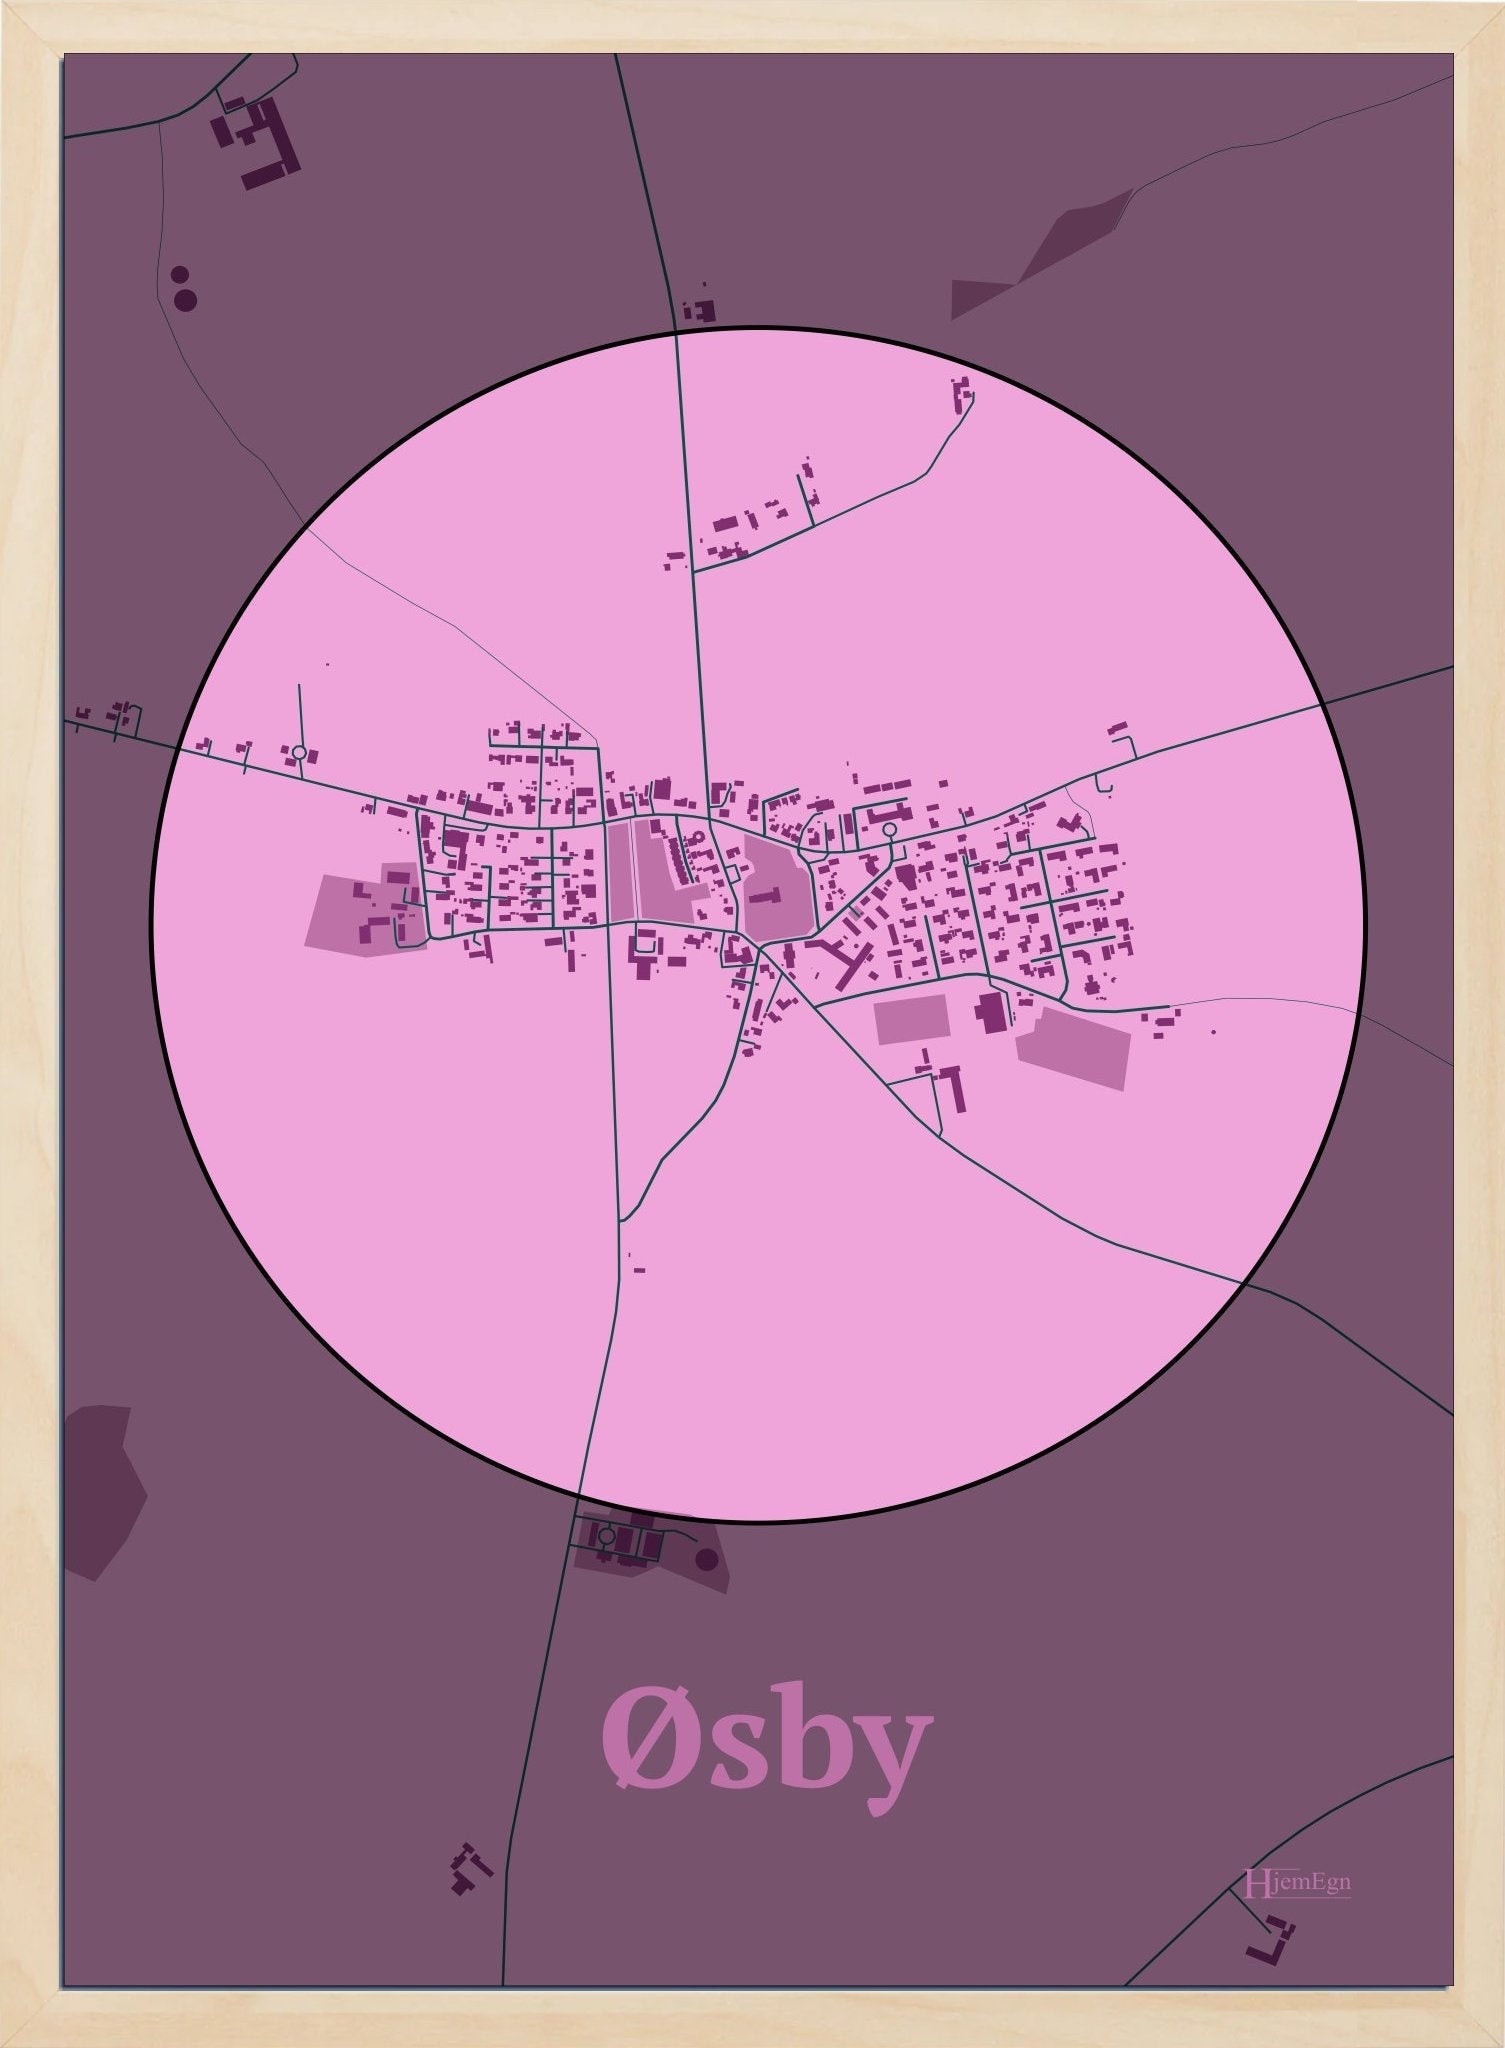 Øsby plakat i farve pastel rød og HjemEgn.dk design centrum. Design bykort for Øsby